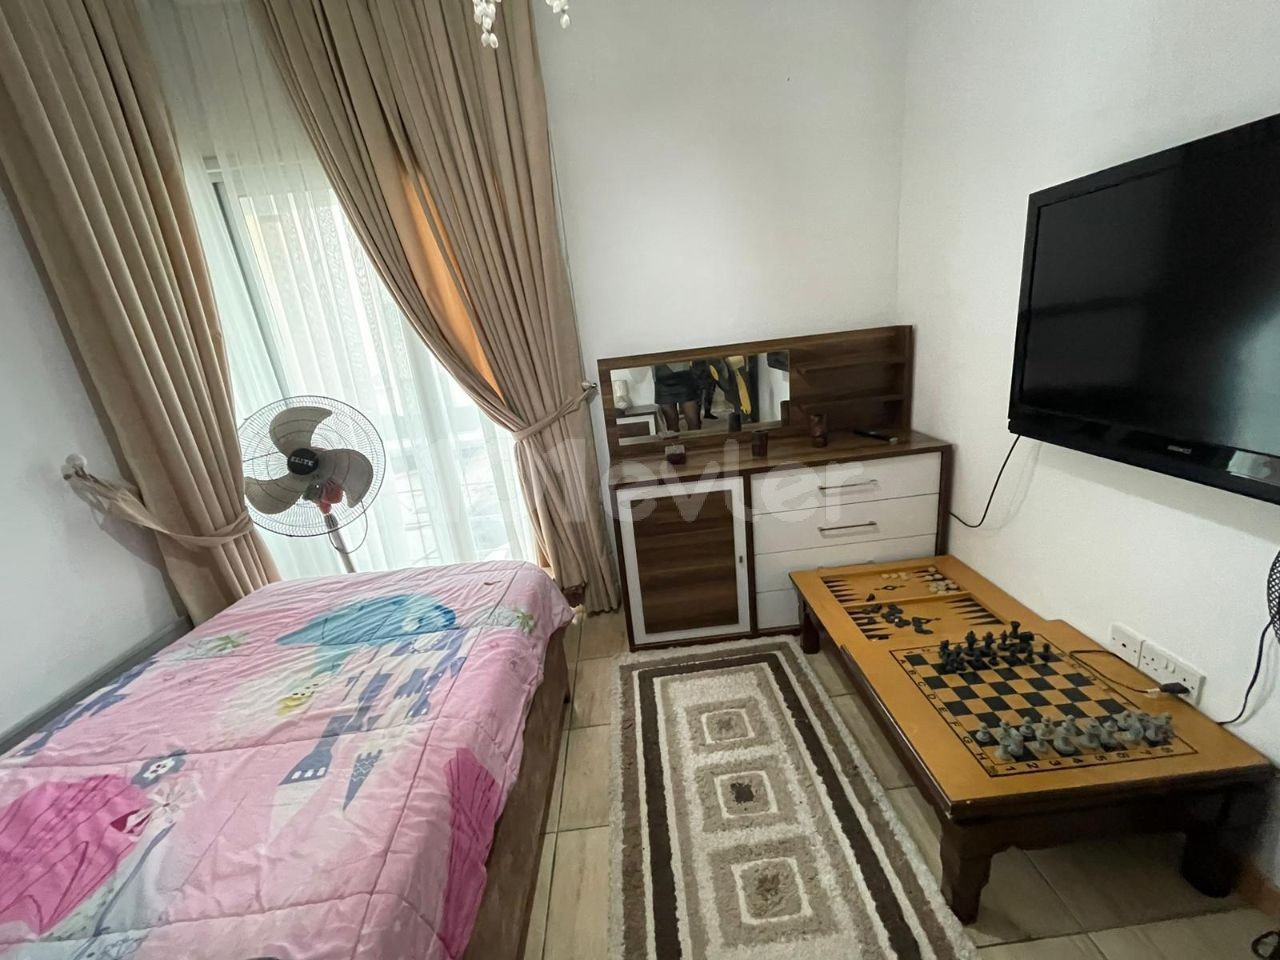 Marmara Bölgesinde SATILIK 3 Yatak Odalı Merkezi Konuma Sahip Apartman Dairesi!